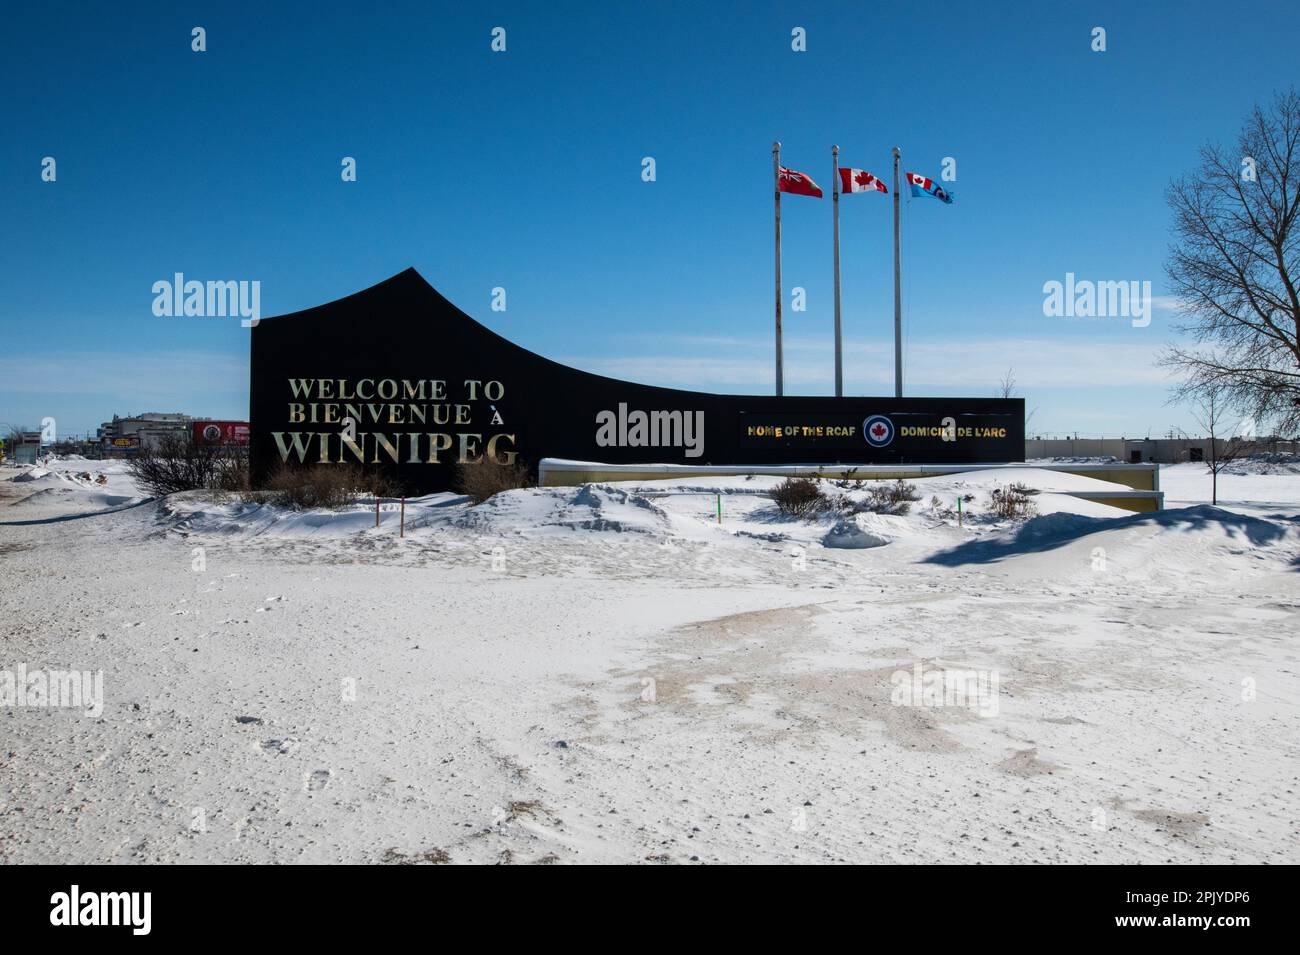 Bienvenido a la señal de Winnipeg en el aeropuerto de Winnipeg, Manitoba, Canadá Foto de stock